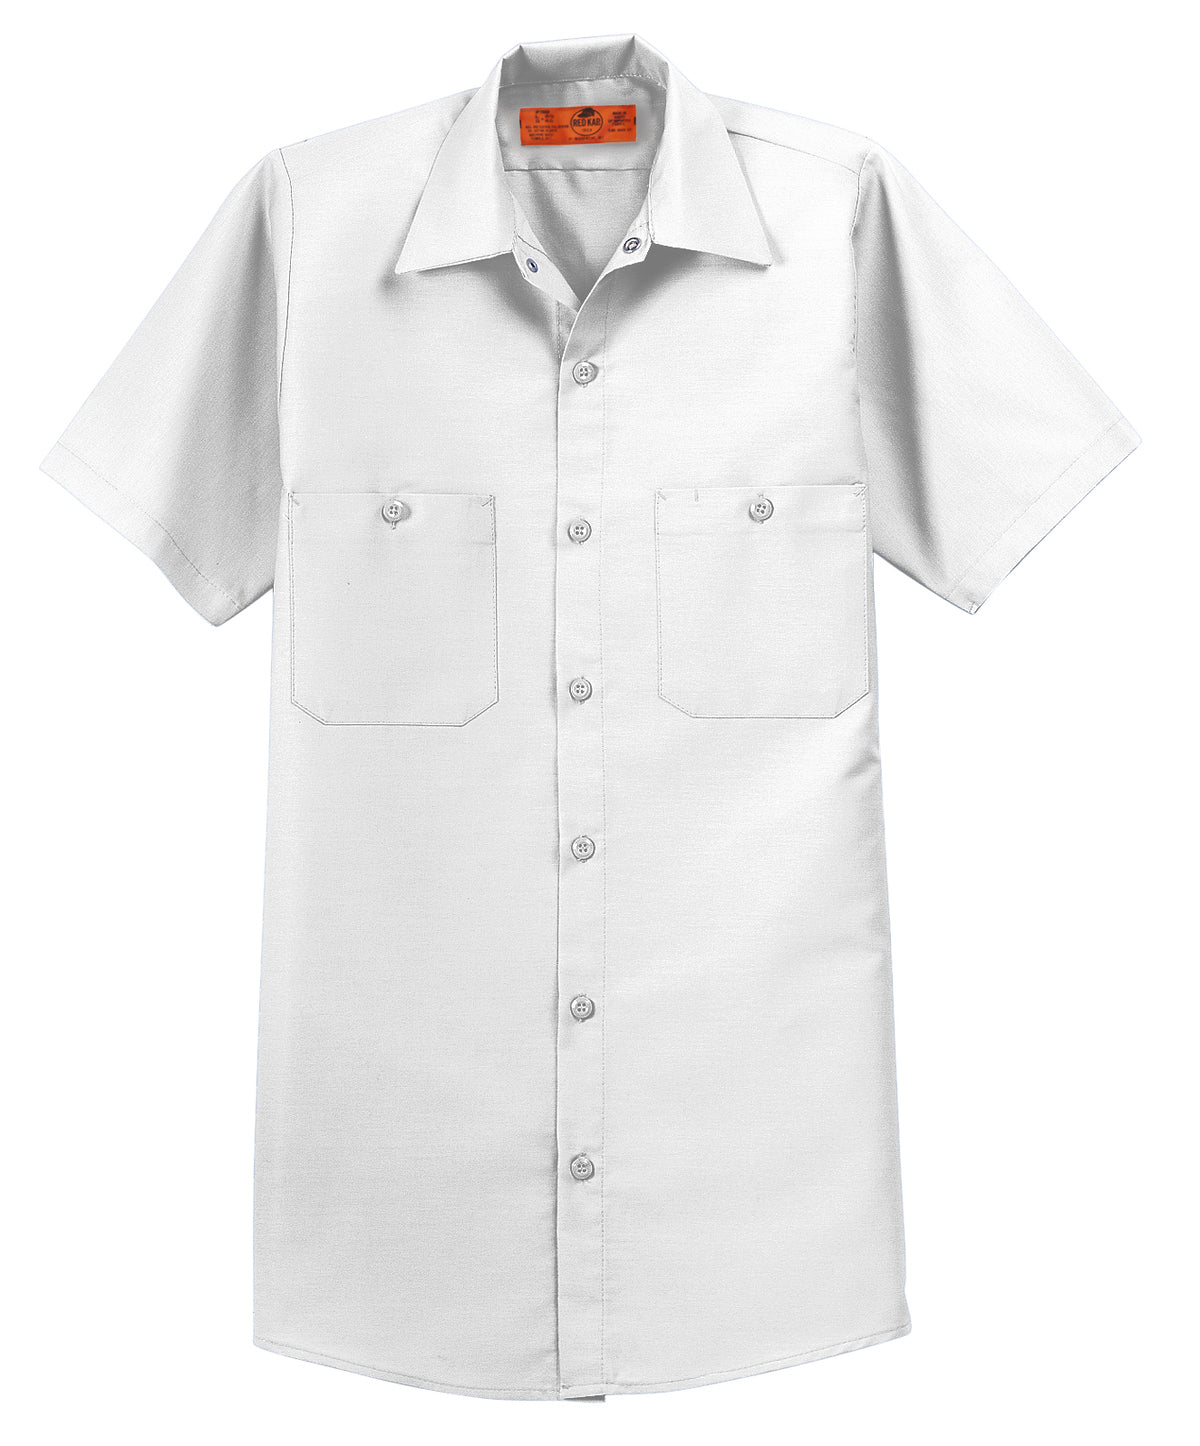 SP24 Red Kap Short Sleeve Industrial Work Shirt